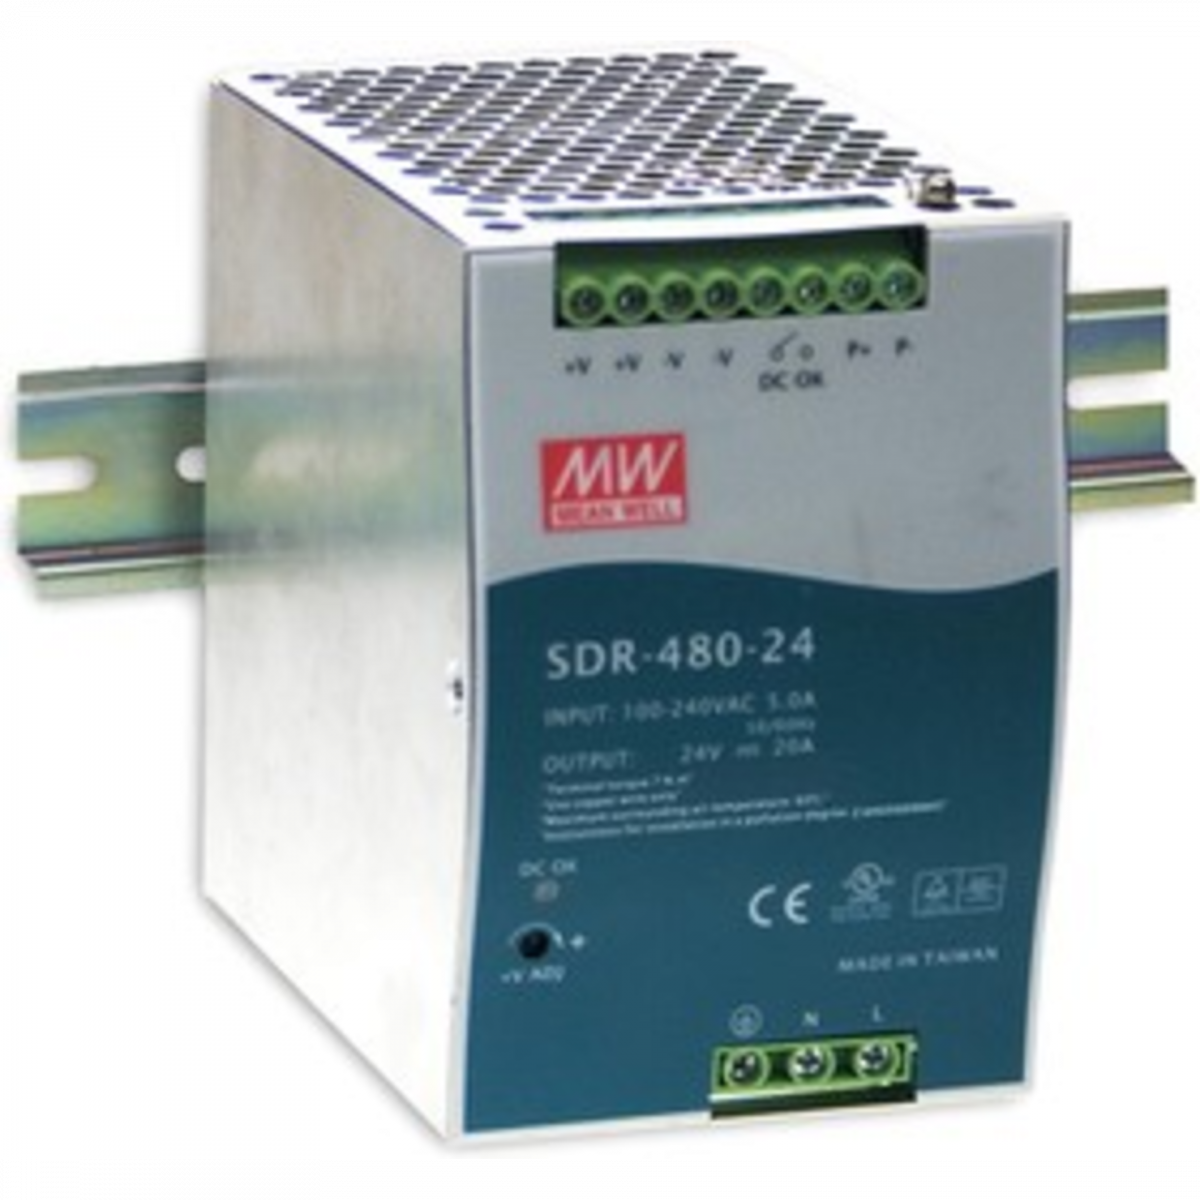 SDR-480-24 Мощный блок питания на DIN-рейку, 24В, 20А, 480Вт Mean Well